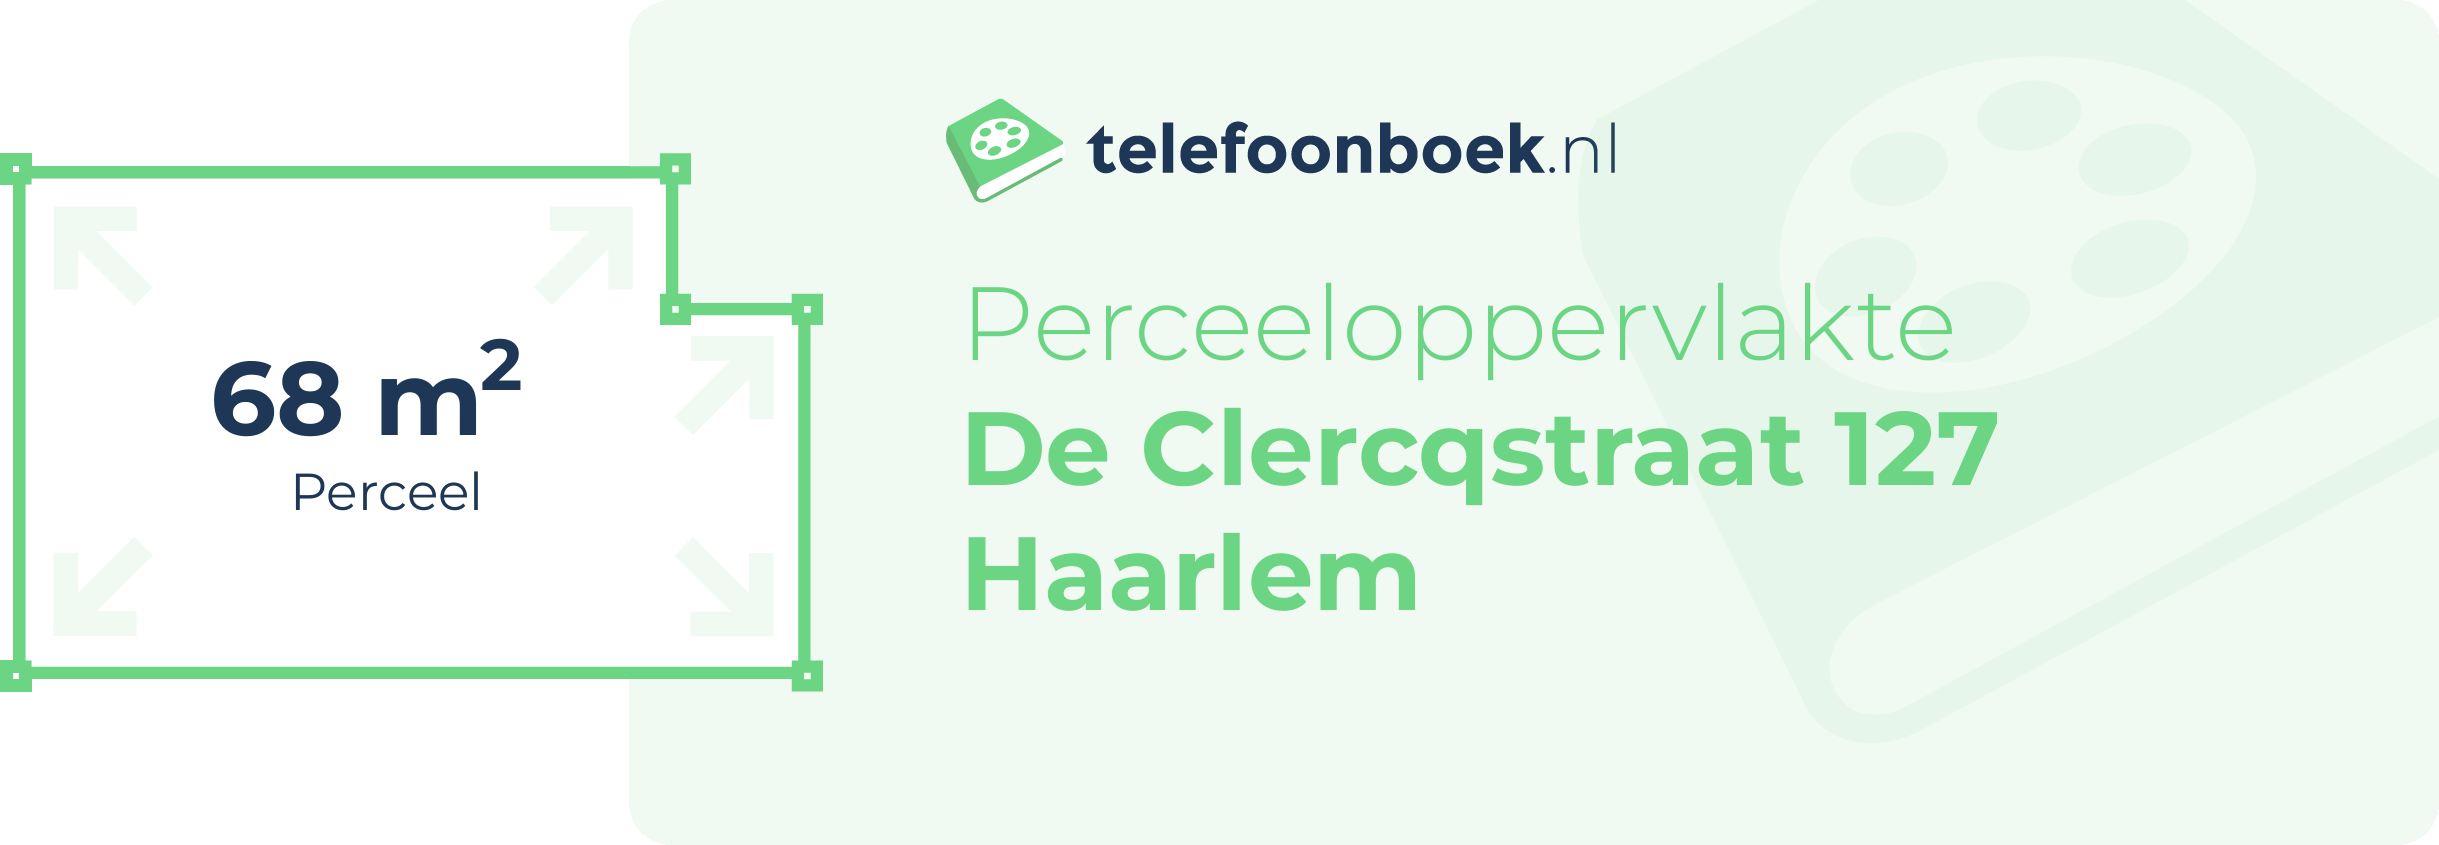 Perceeloppervlakte De Clercqstraat 127 Haarlem